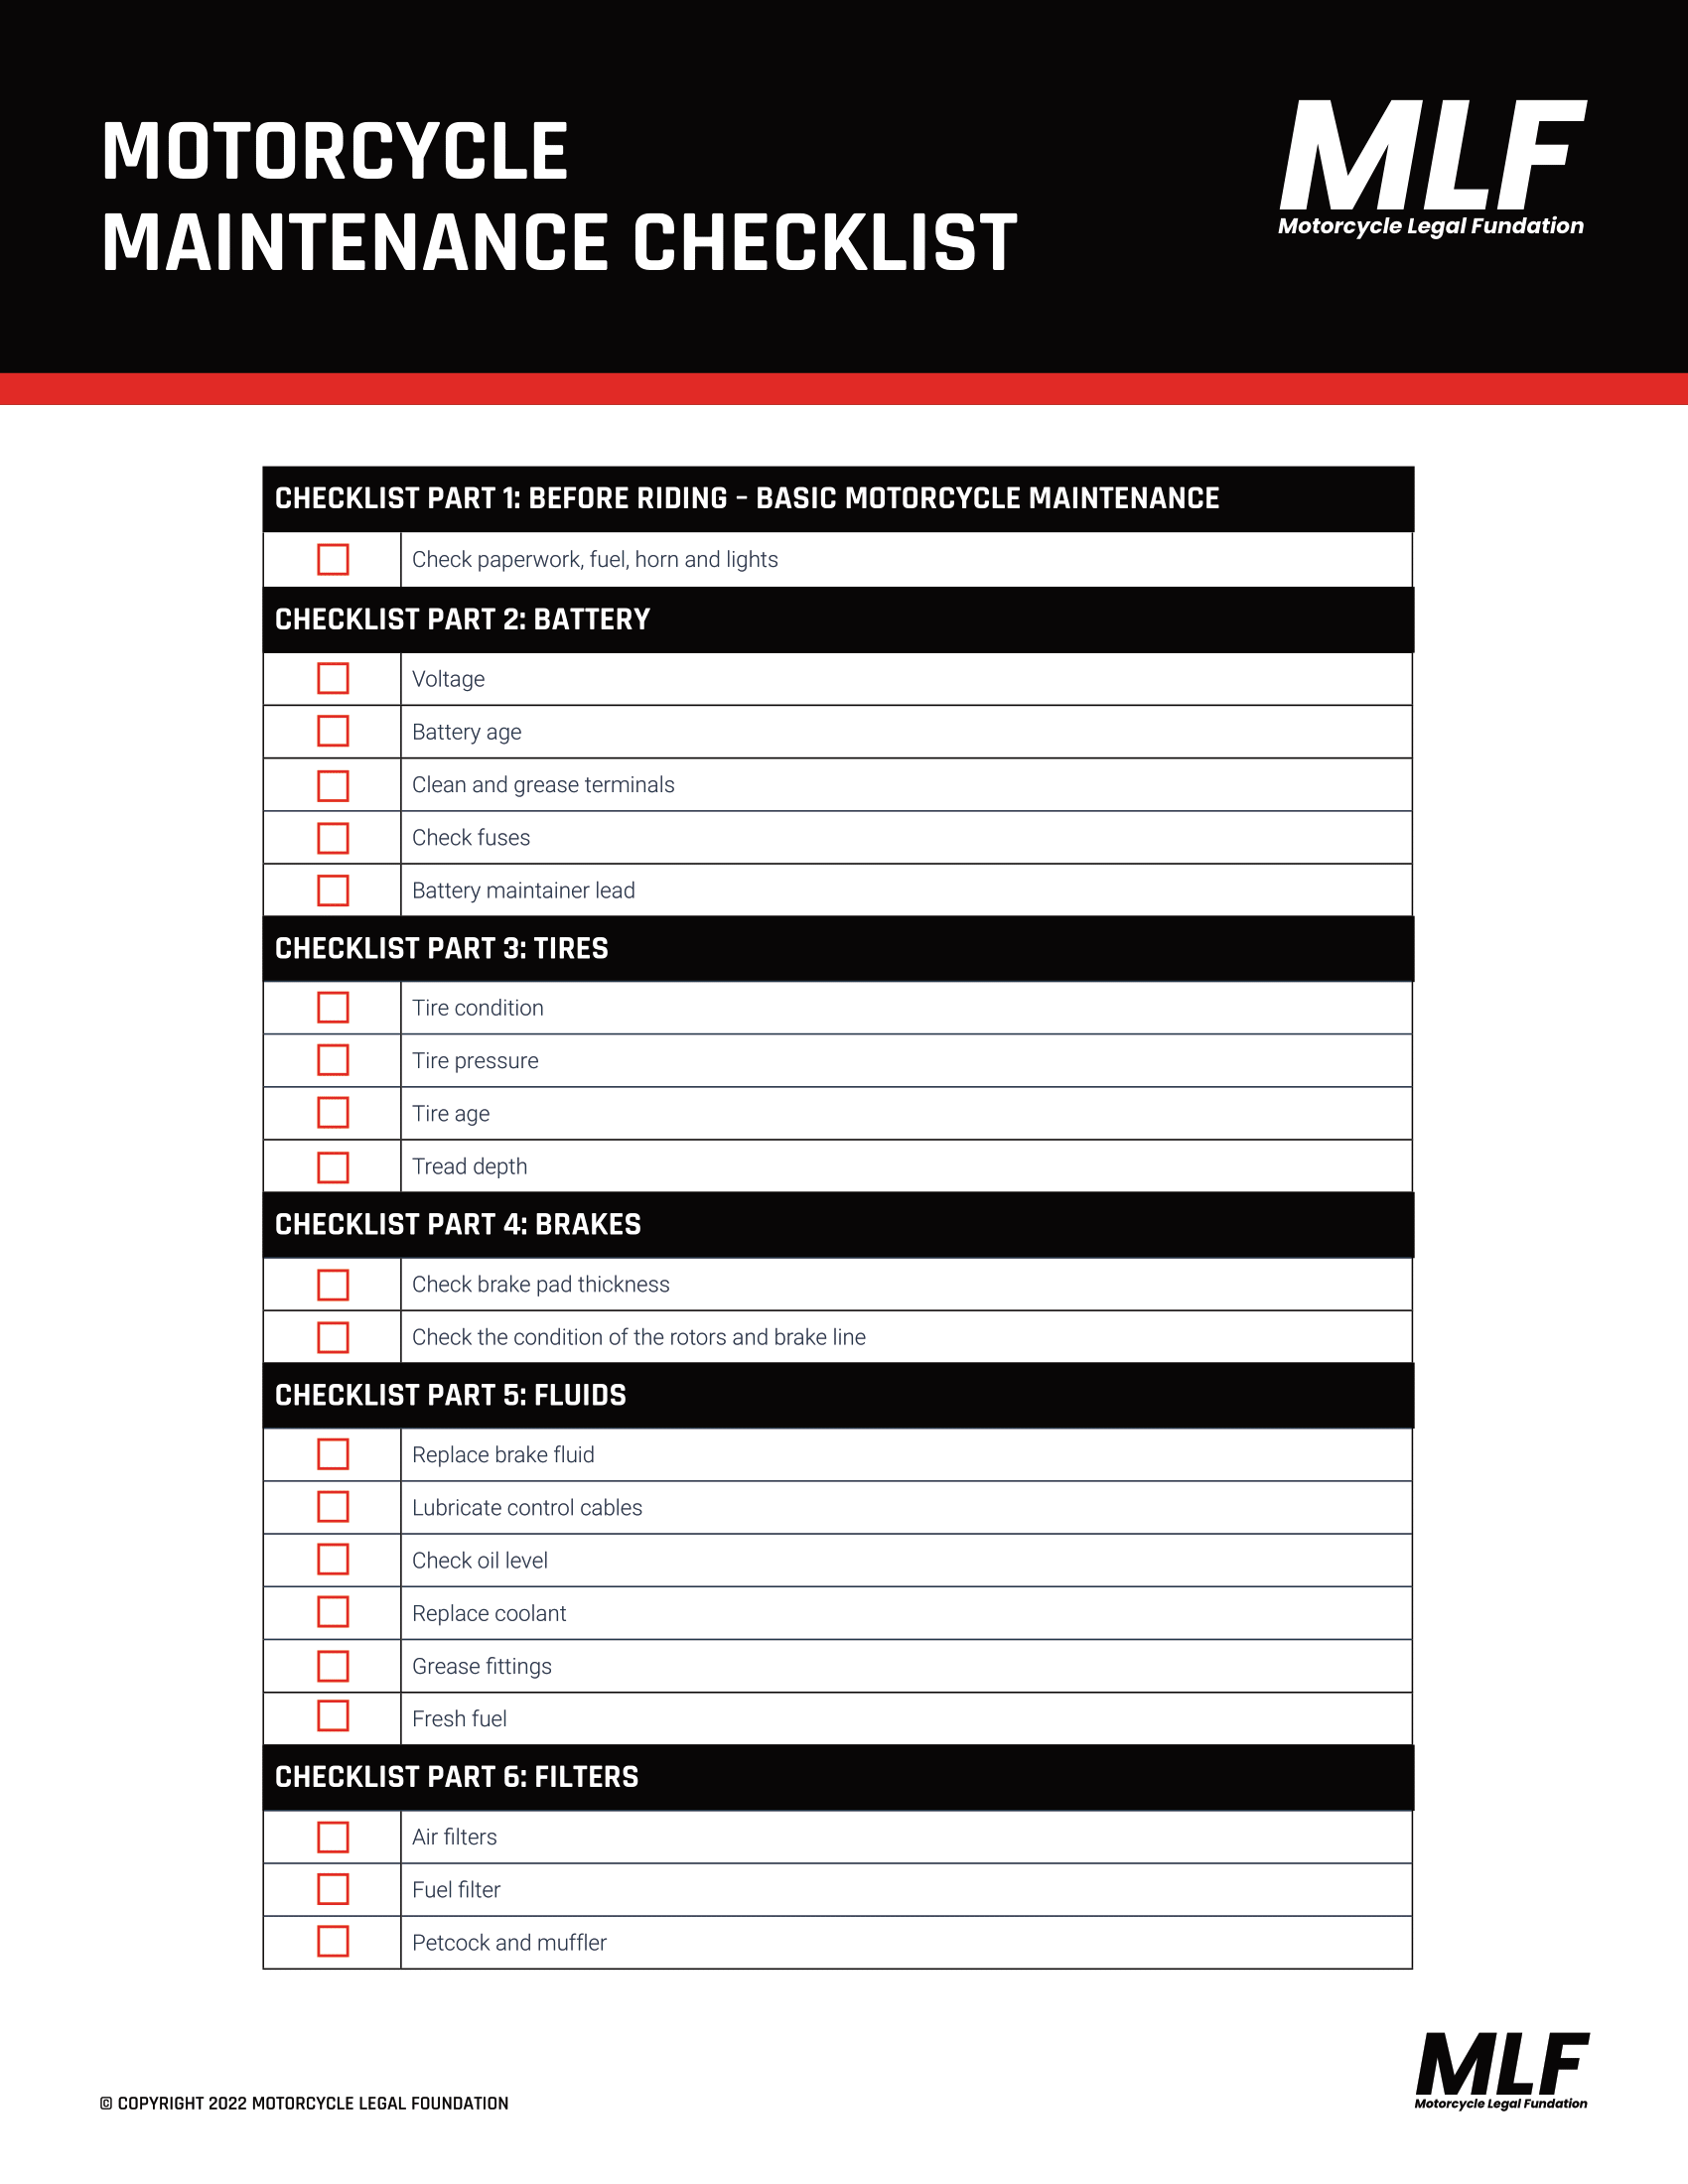 контрольный список обслуживания мотоцикла